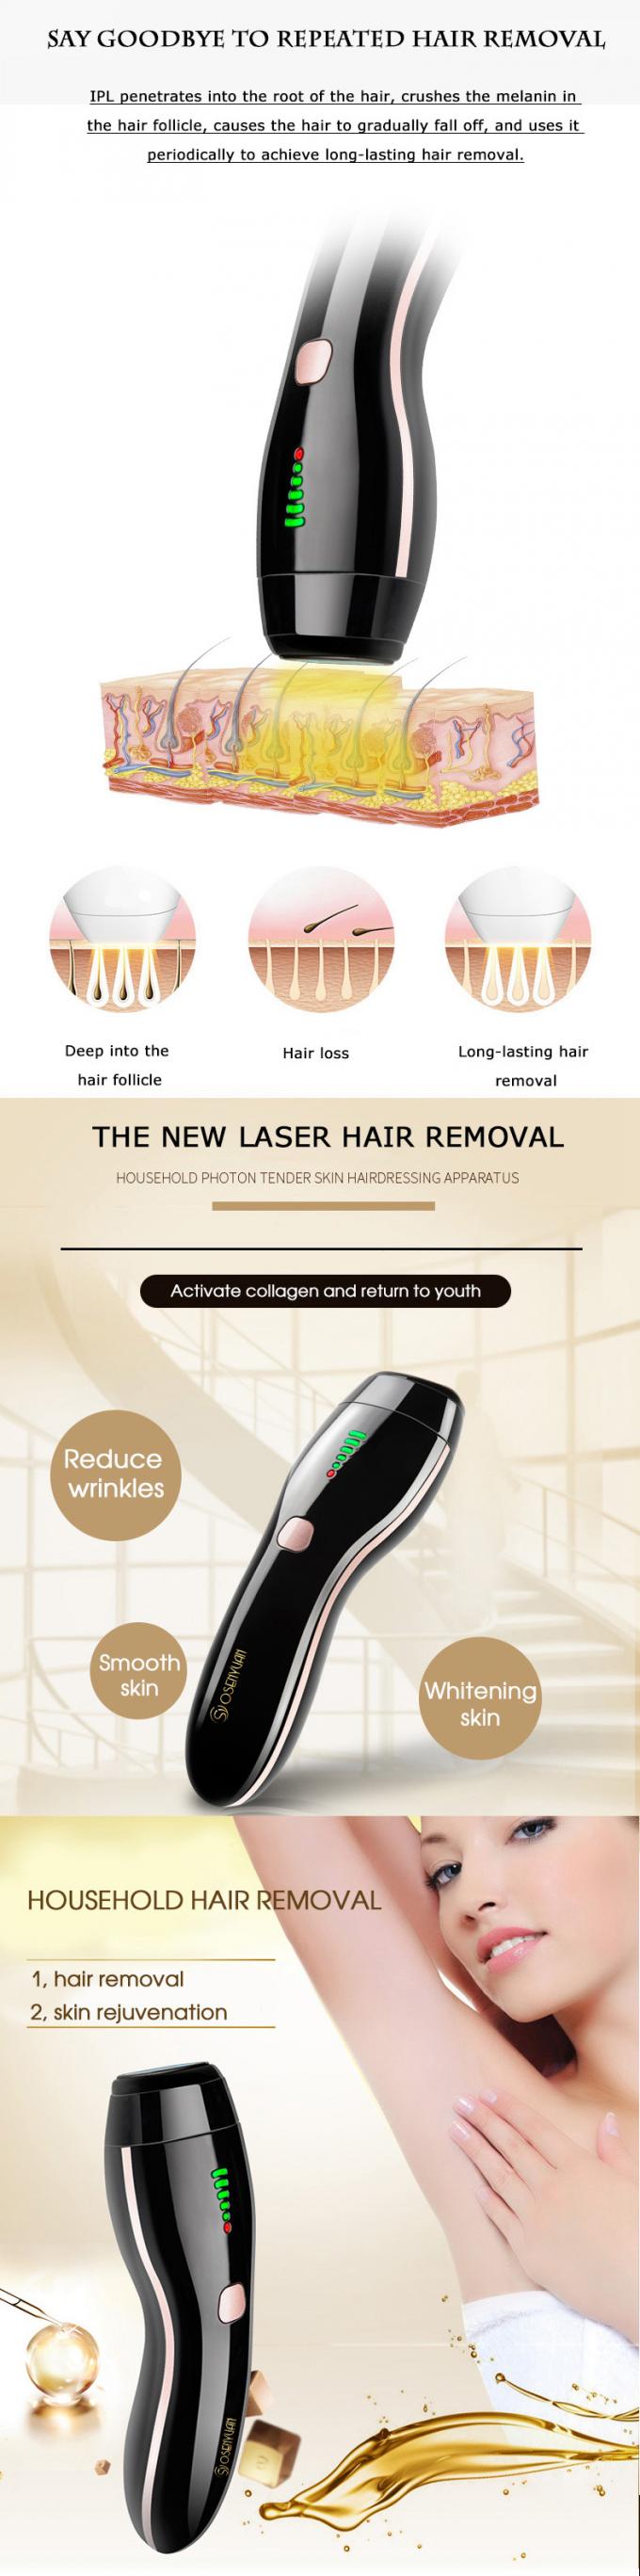 Триммер многофункционального удаления волос лазера машины красоты дома Эпилатор электрический